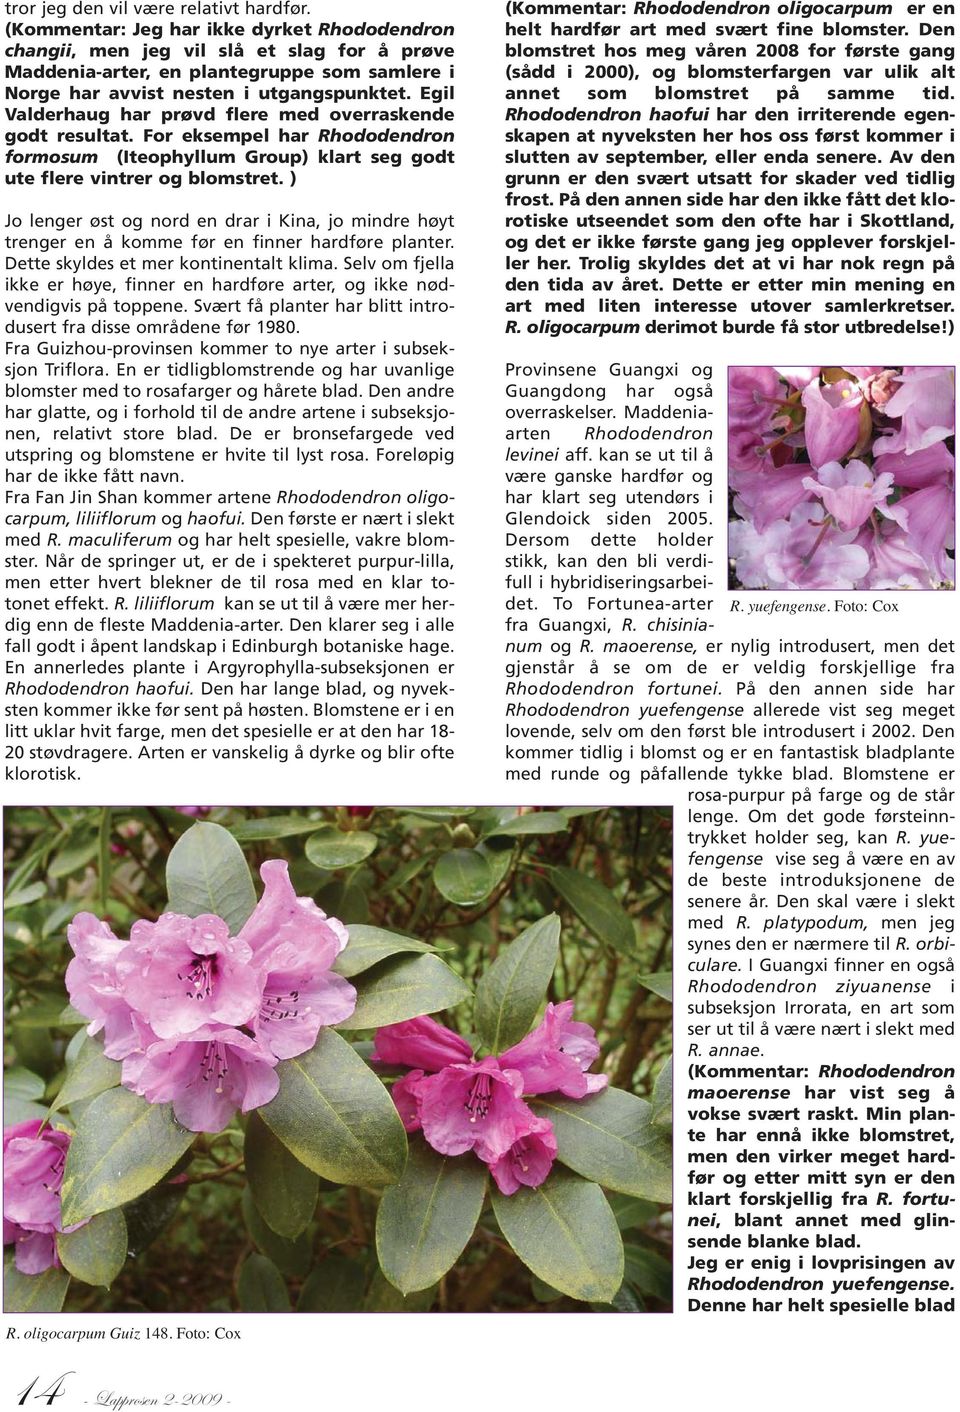 Egil Valderhaug har prøvd flere med overraskende godt resultat. For eksempel har Rhododendron formosum (Iteophyllum Group) klart seg godt ute flere vintrer og blomstret.